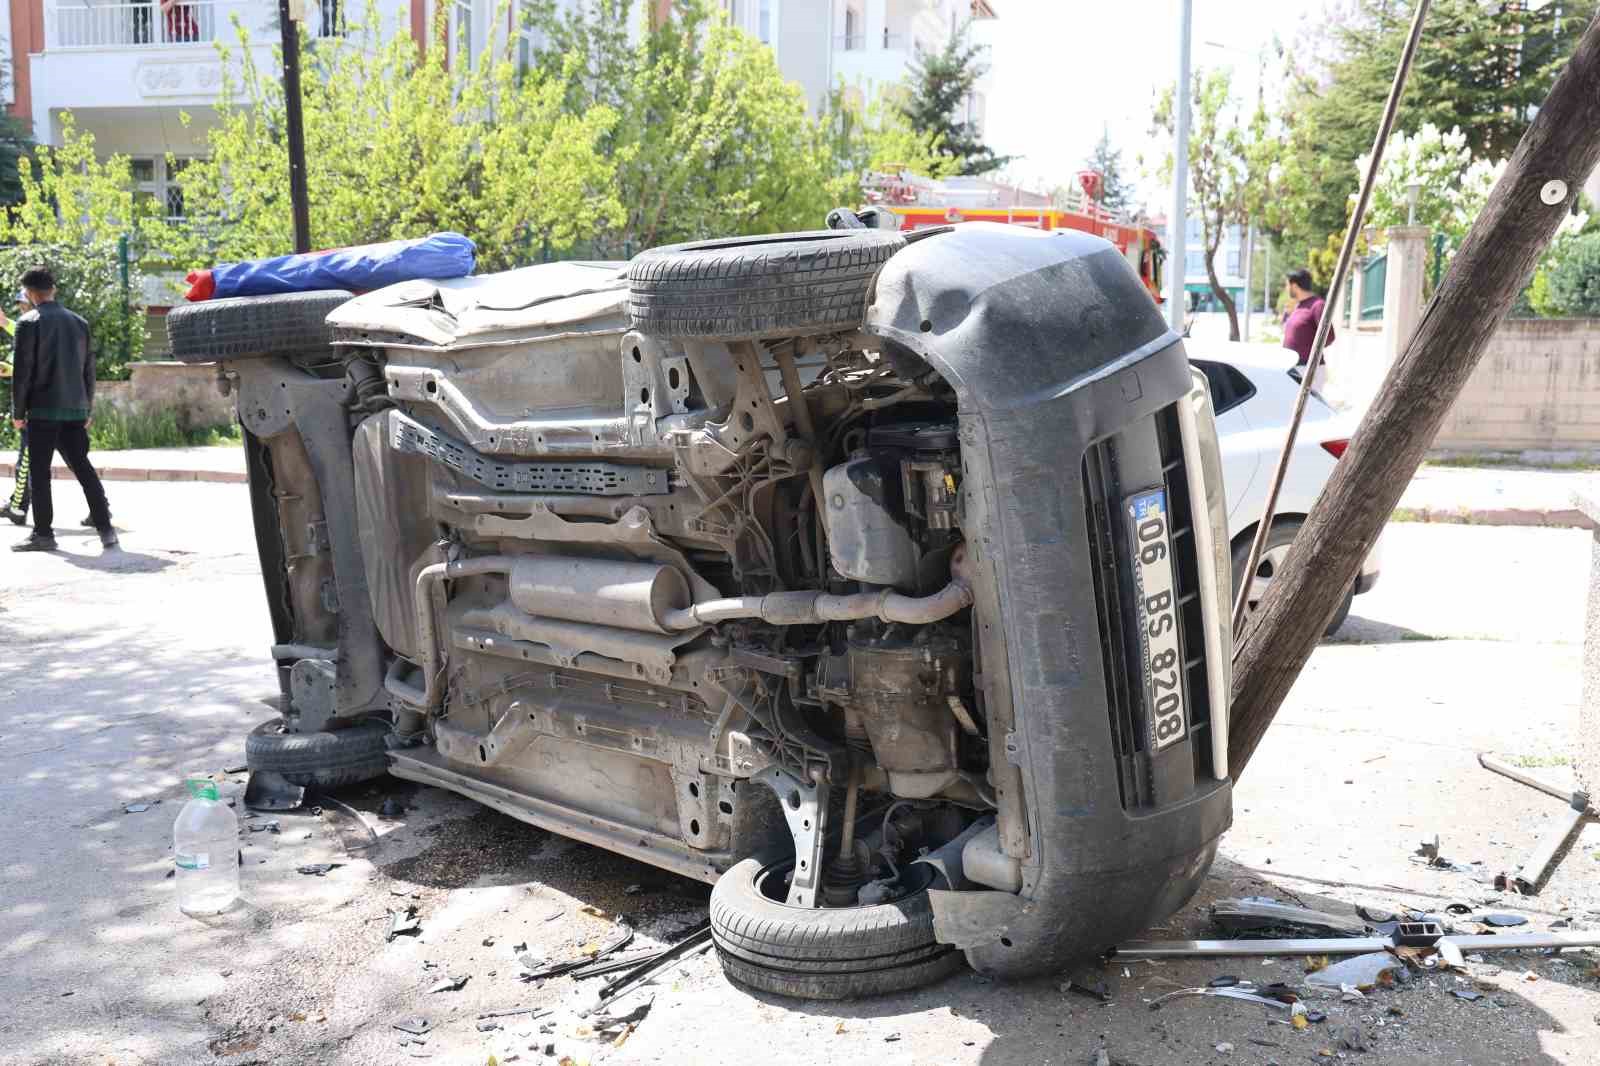 Elazığ’da kazaya karışan hafif ticari araç yan yattı: 1 yaralı
